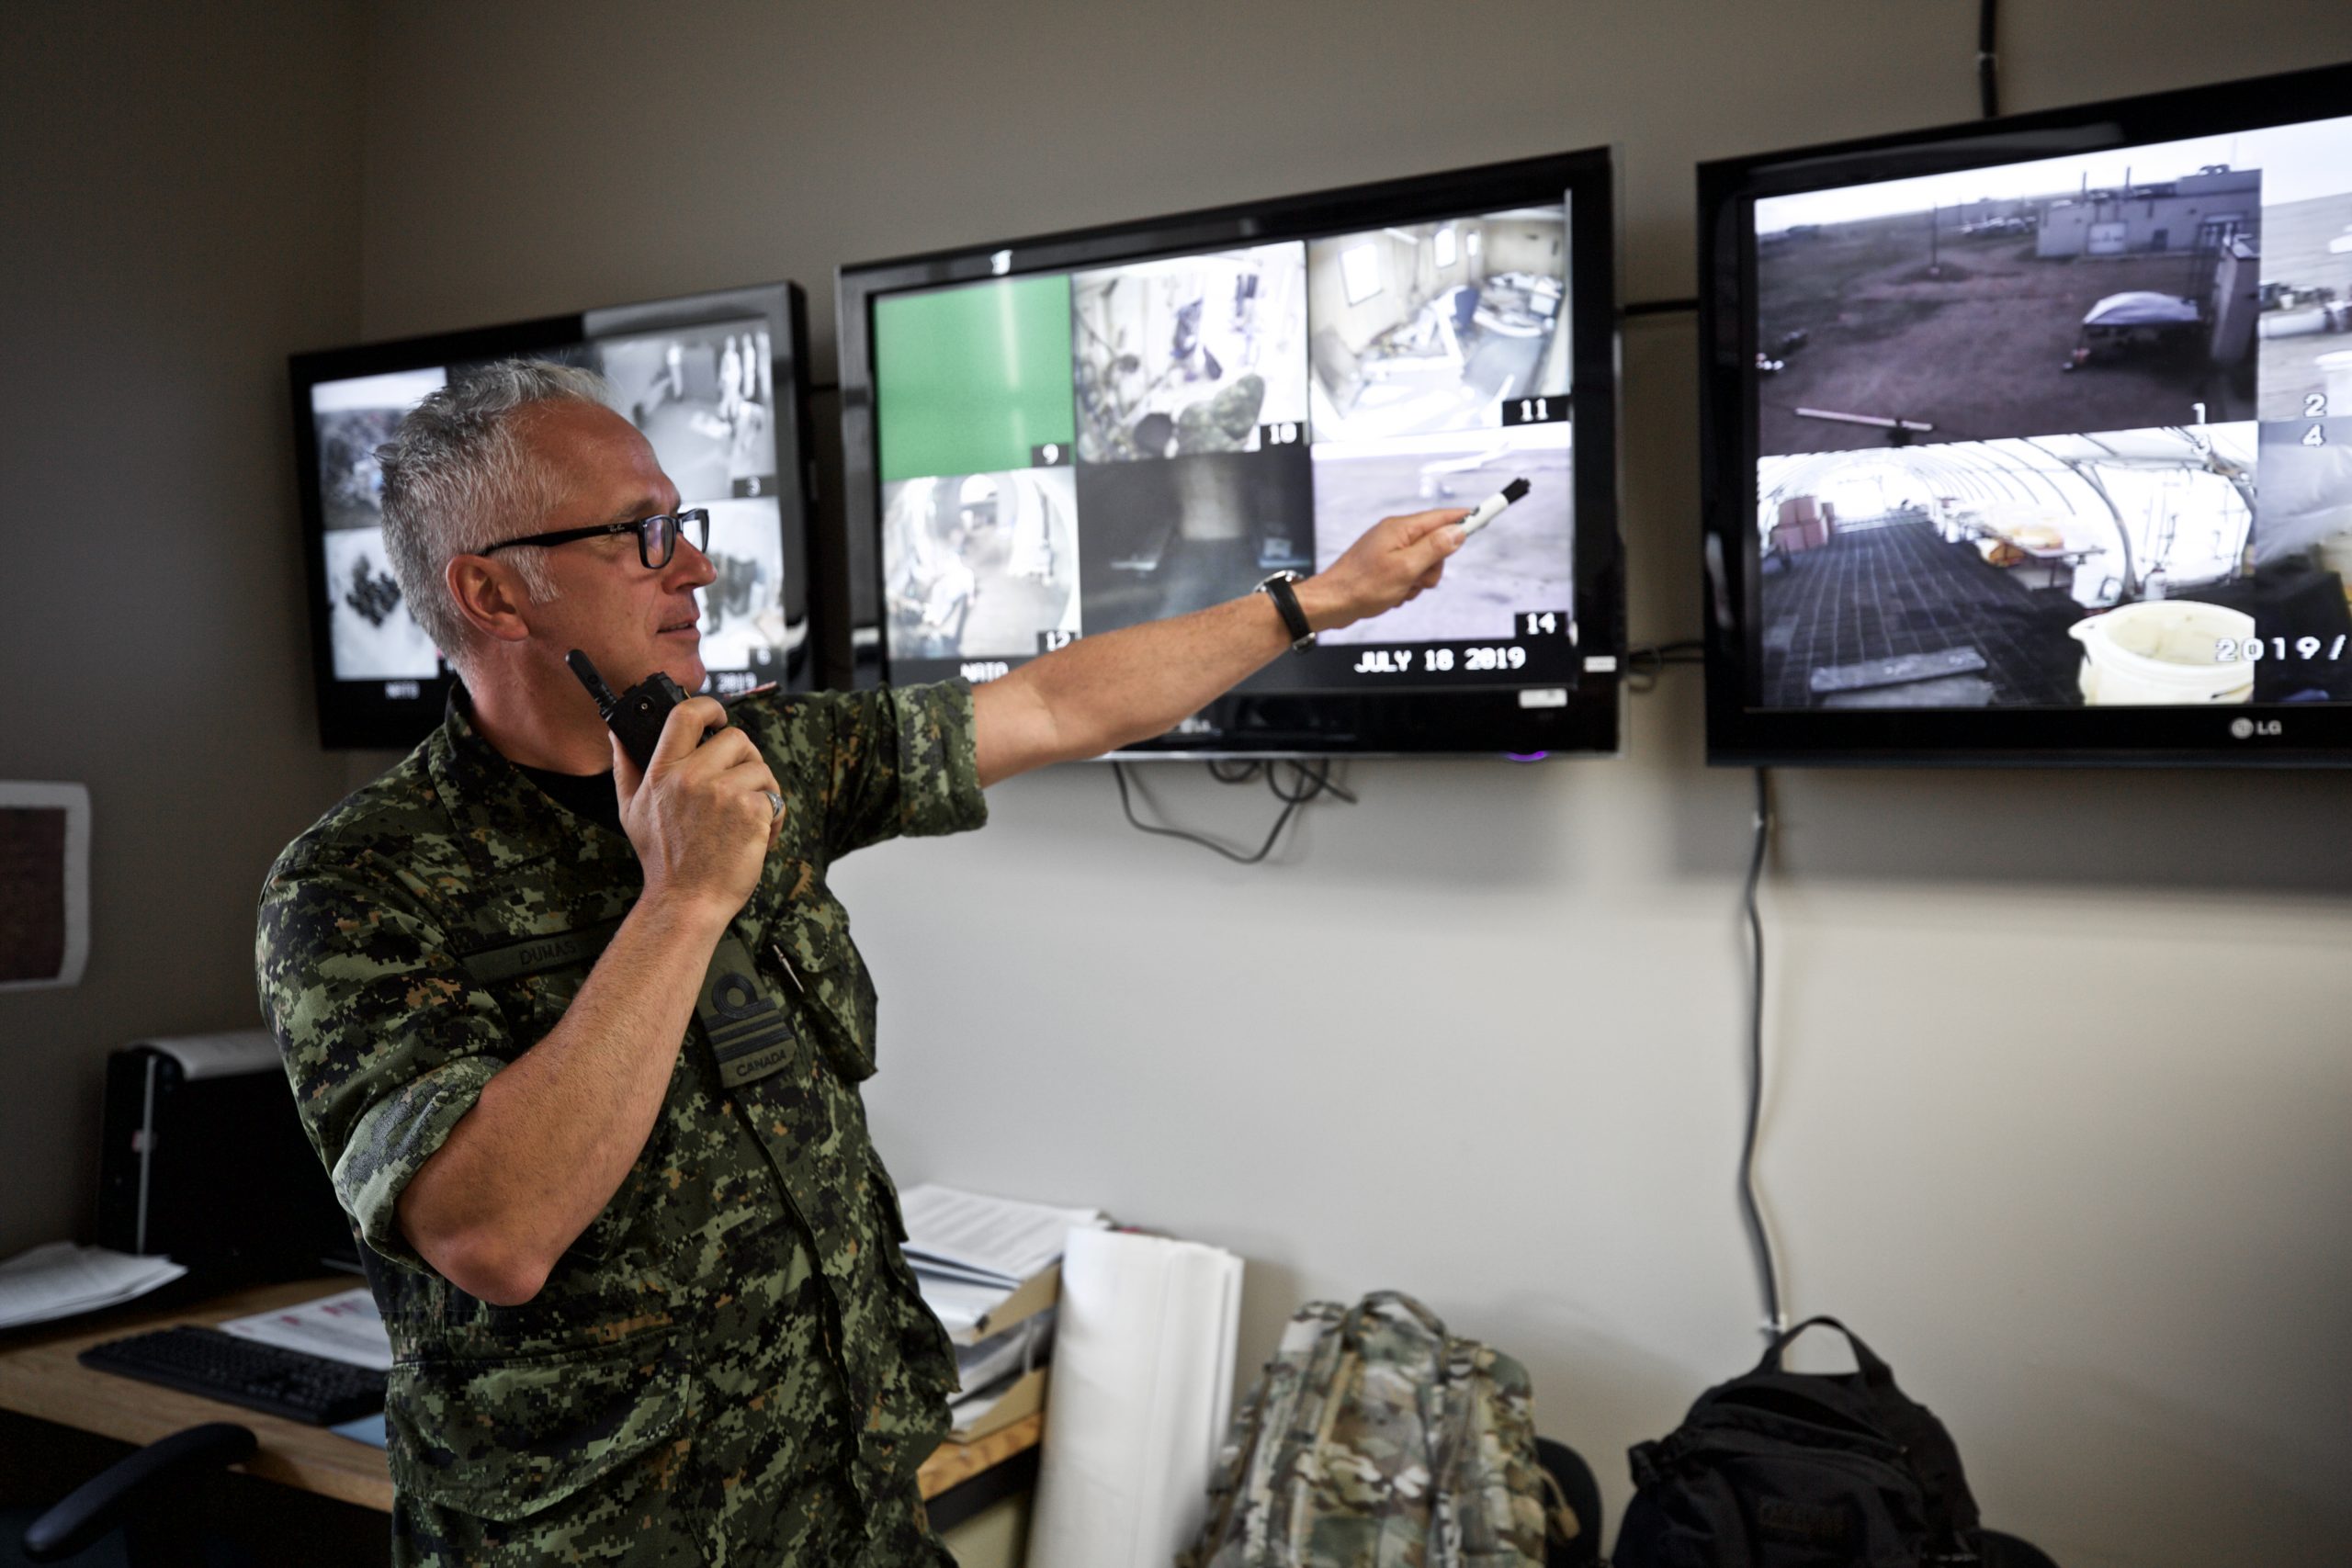 En eldre mann i militæruniform står foran tre TV-skjermer og overvåker treningsaktiviteten.